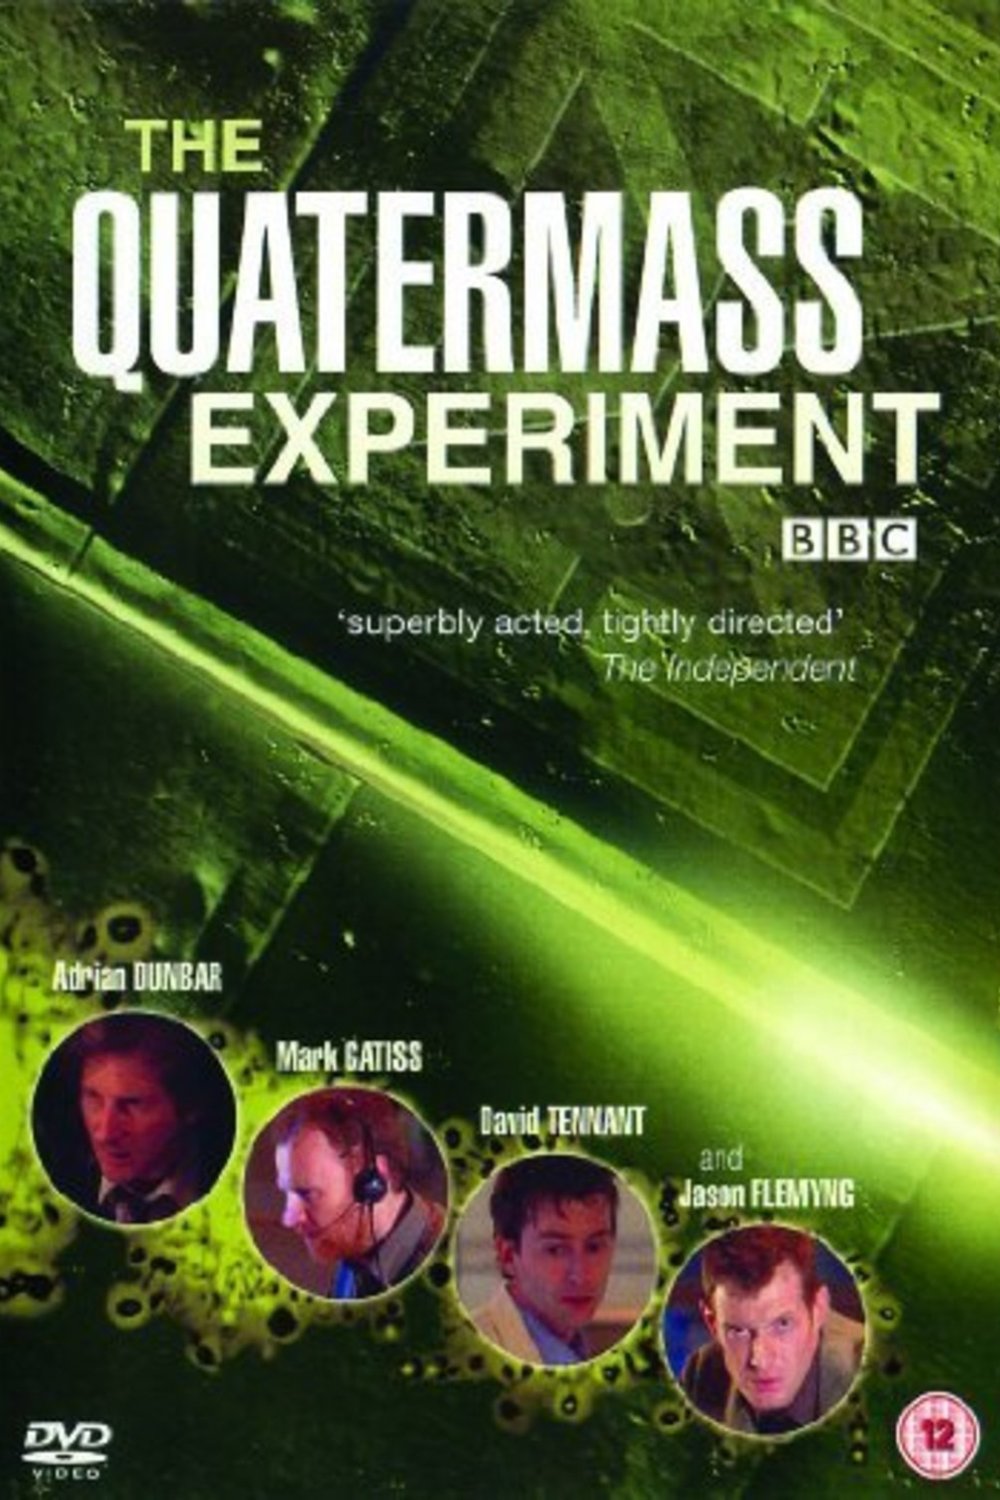 L'affiche du film The Quatermass Experiment